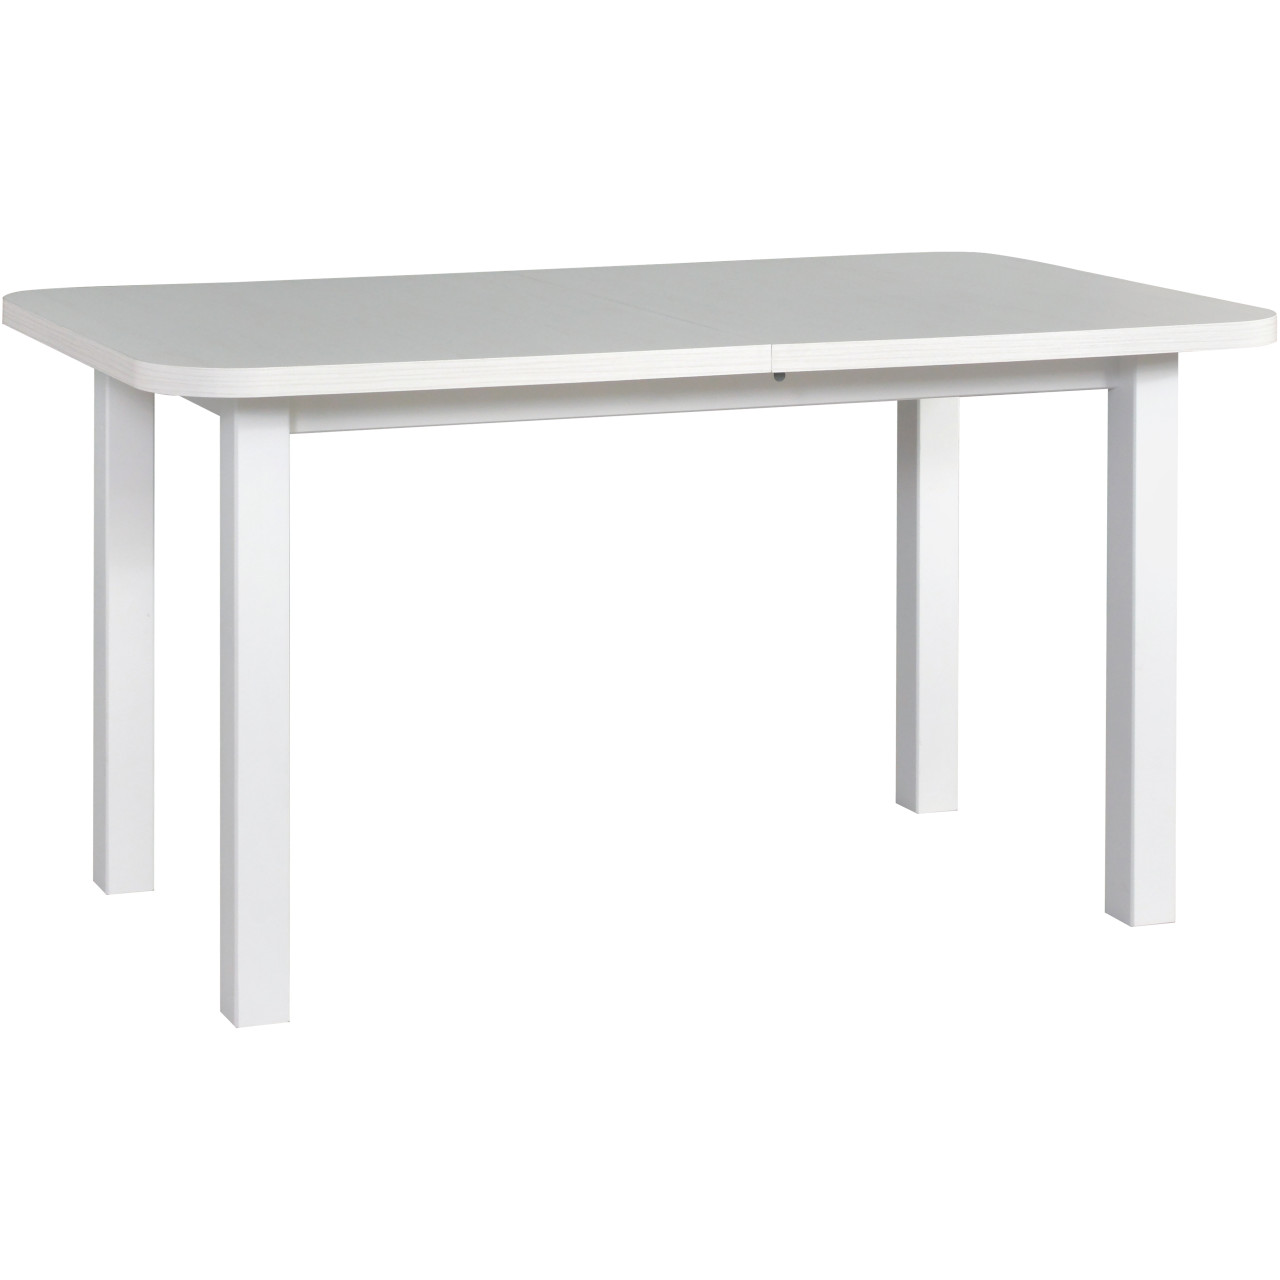  Stół WENUS 2 80x140/180 biały laminat